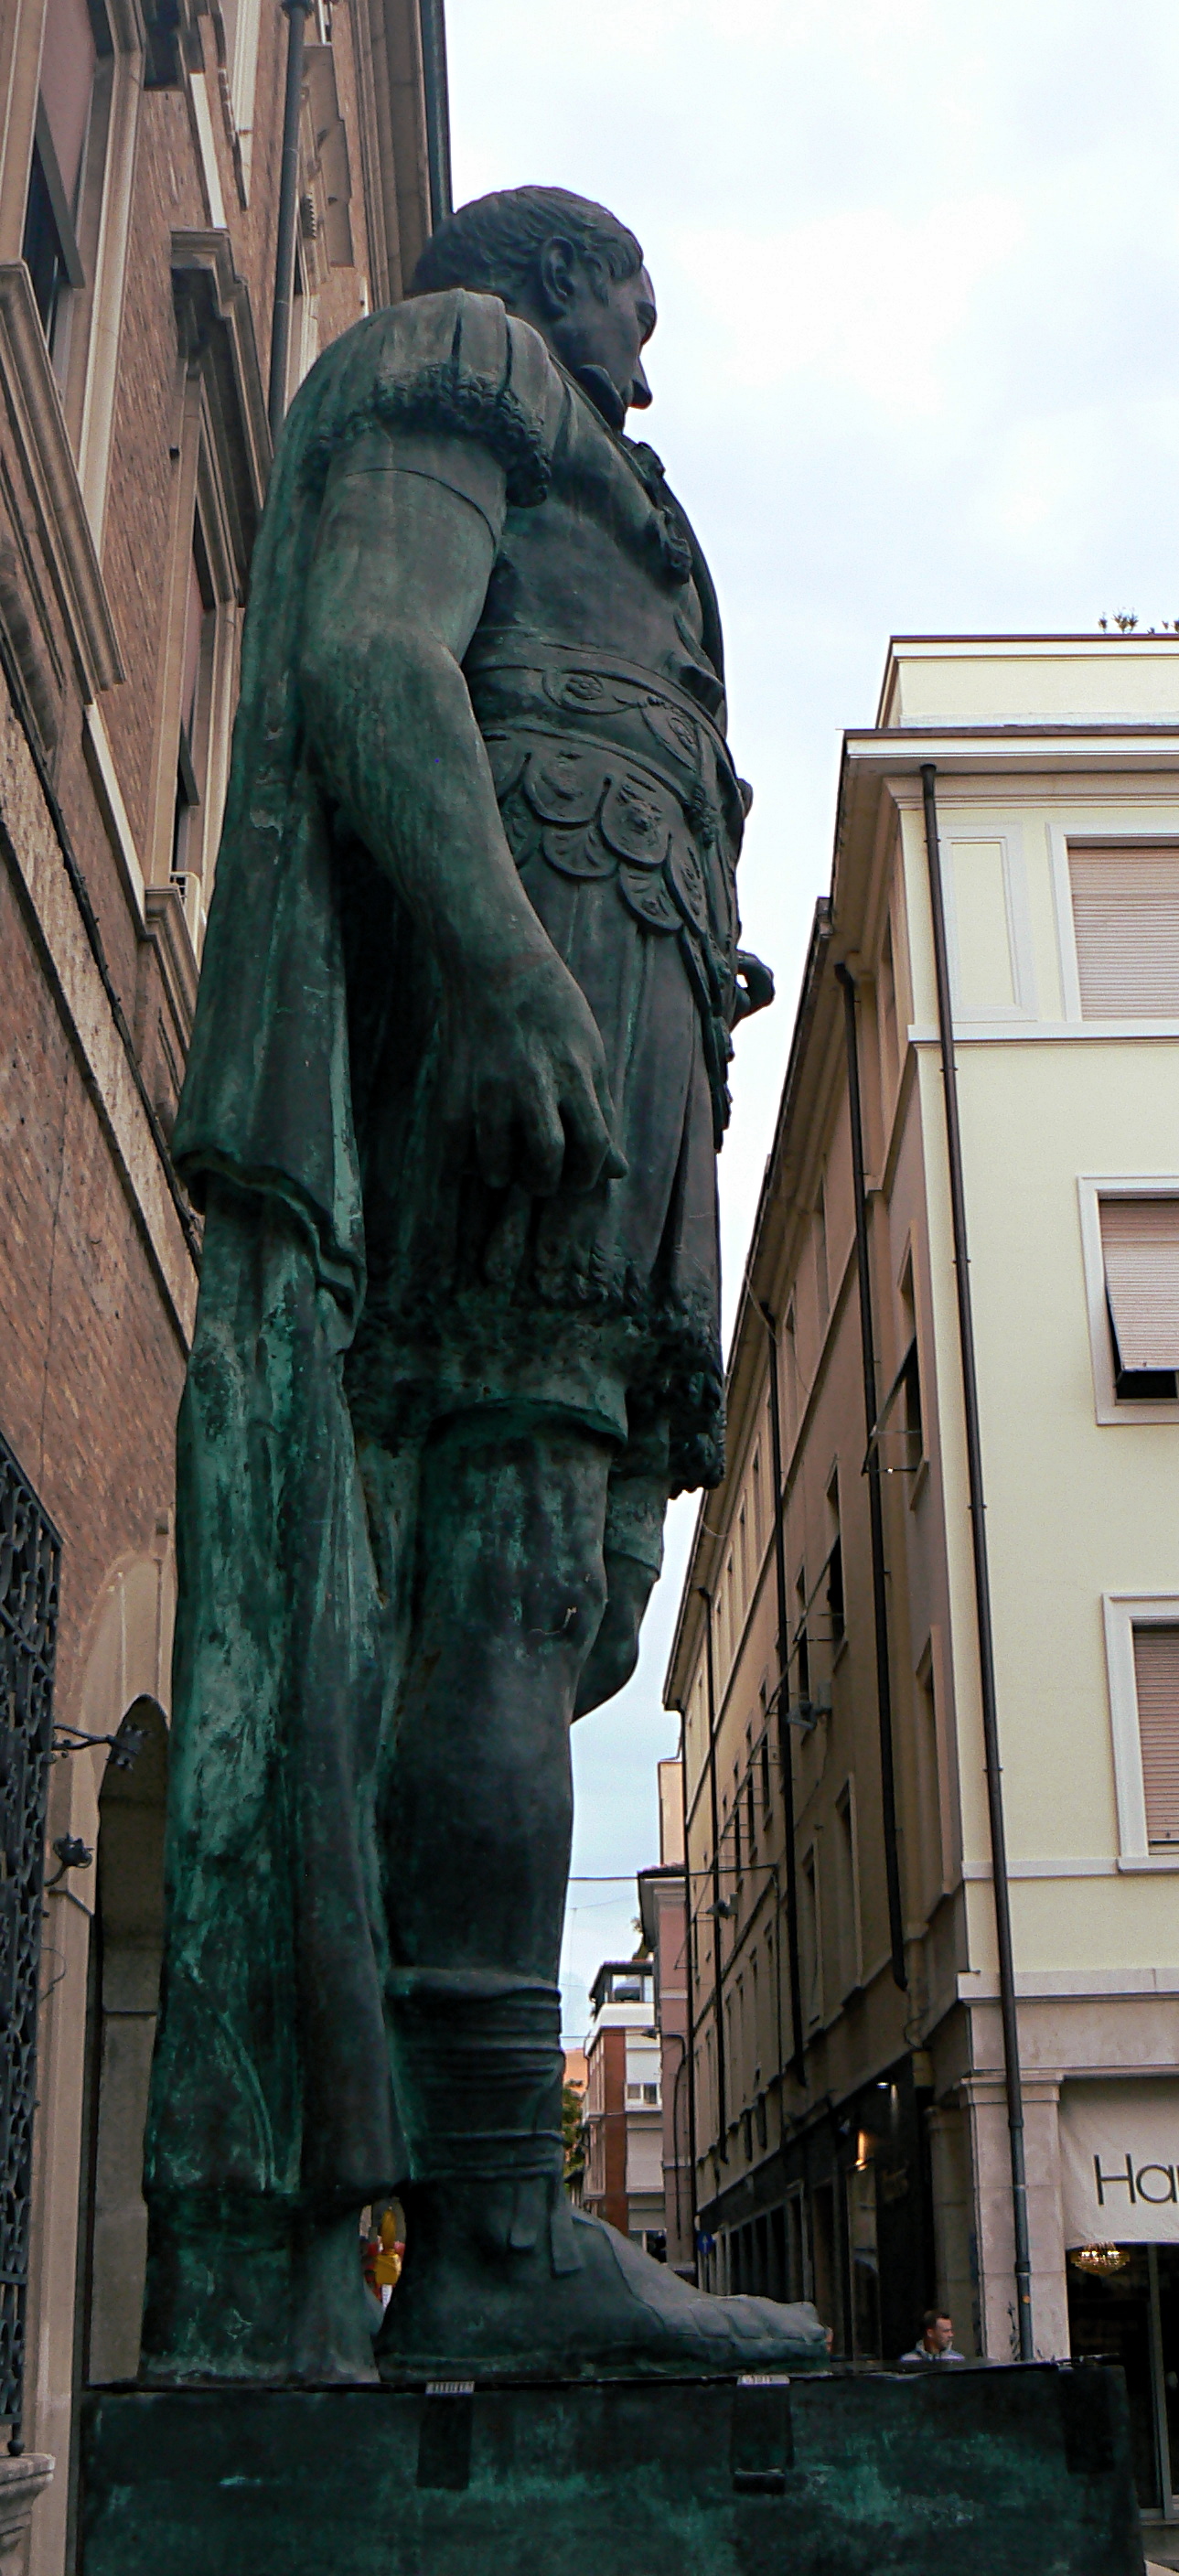 foto: https://upload.wikimedia.org/wikipedia/commons/9/9e/Rimini_profilo_statua_di_Giulio_Cesare_3.jpg